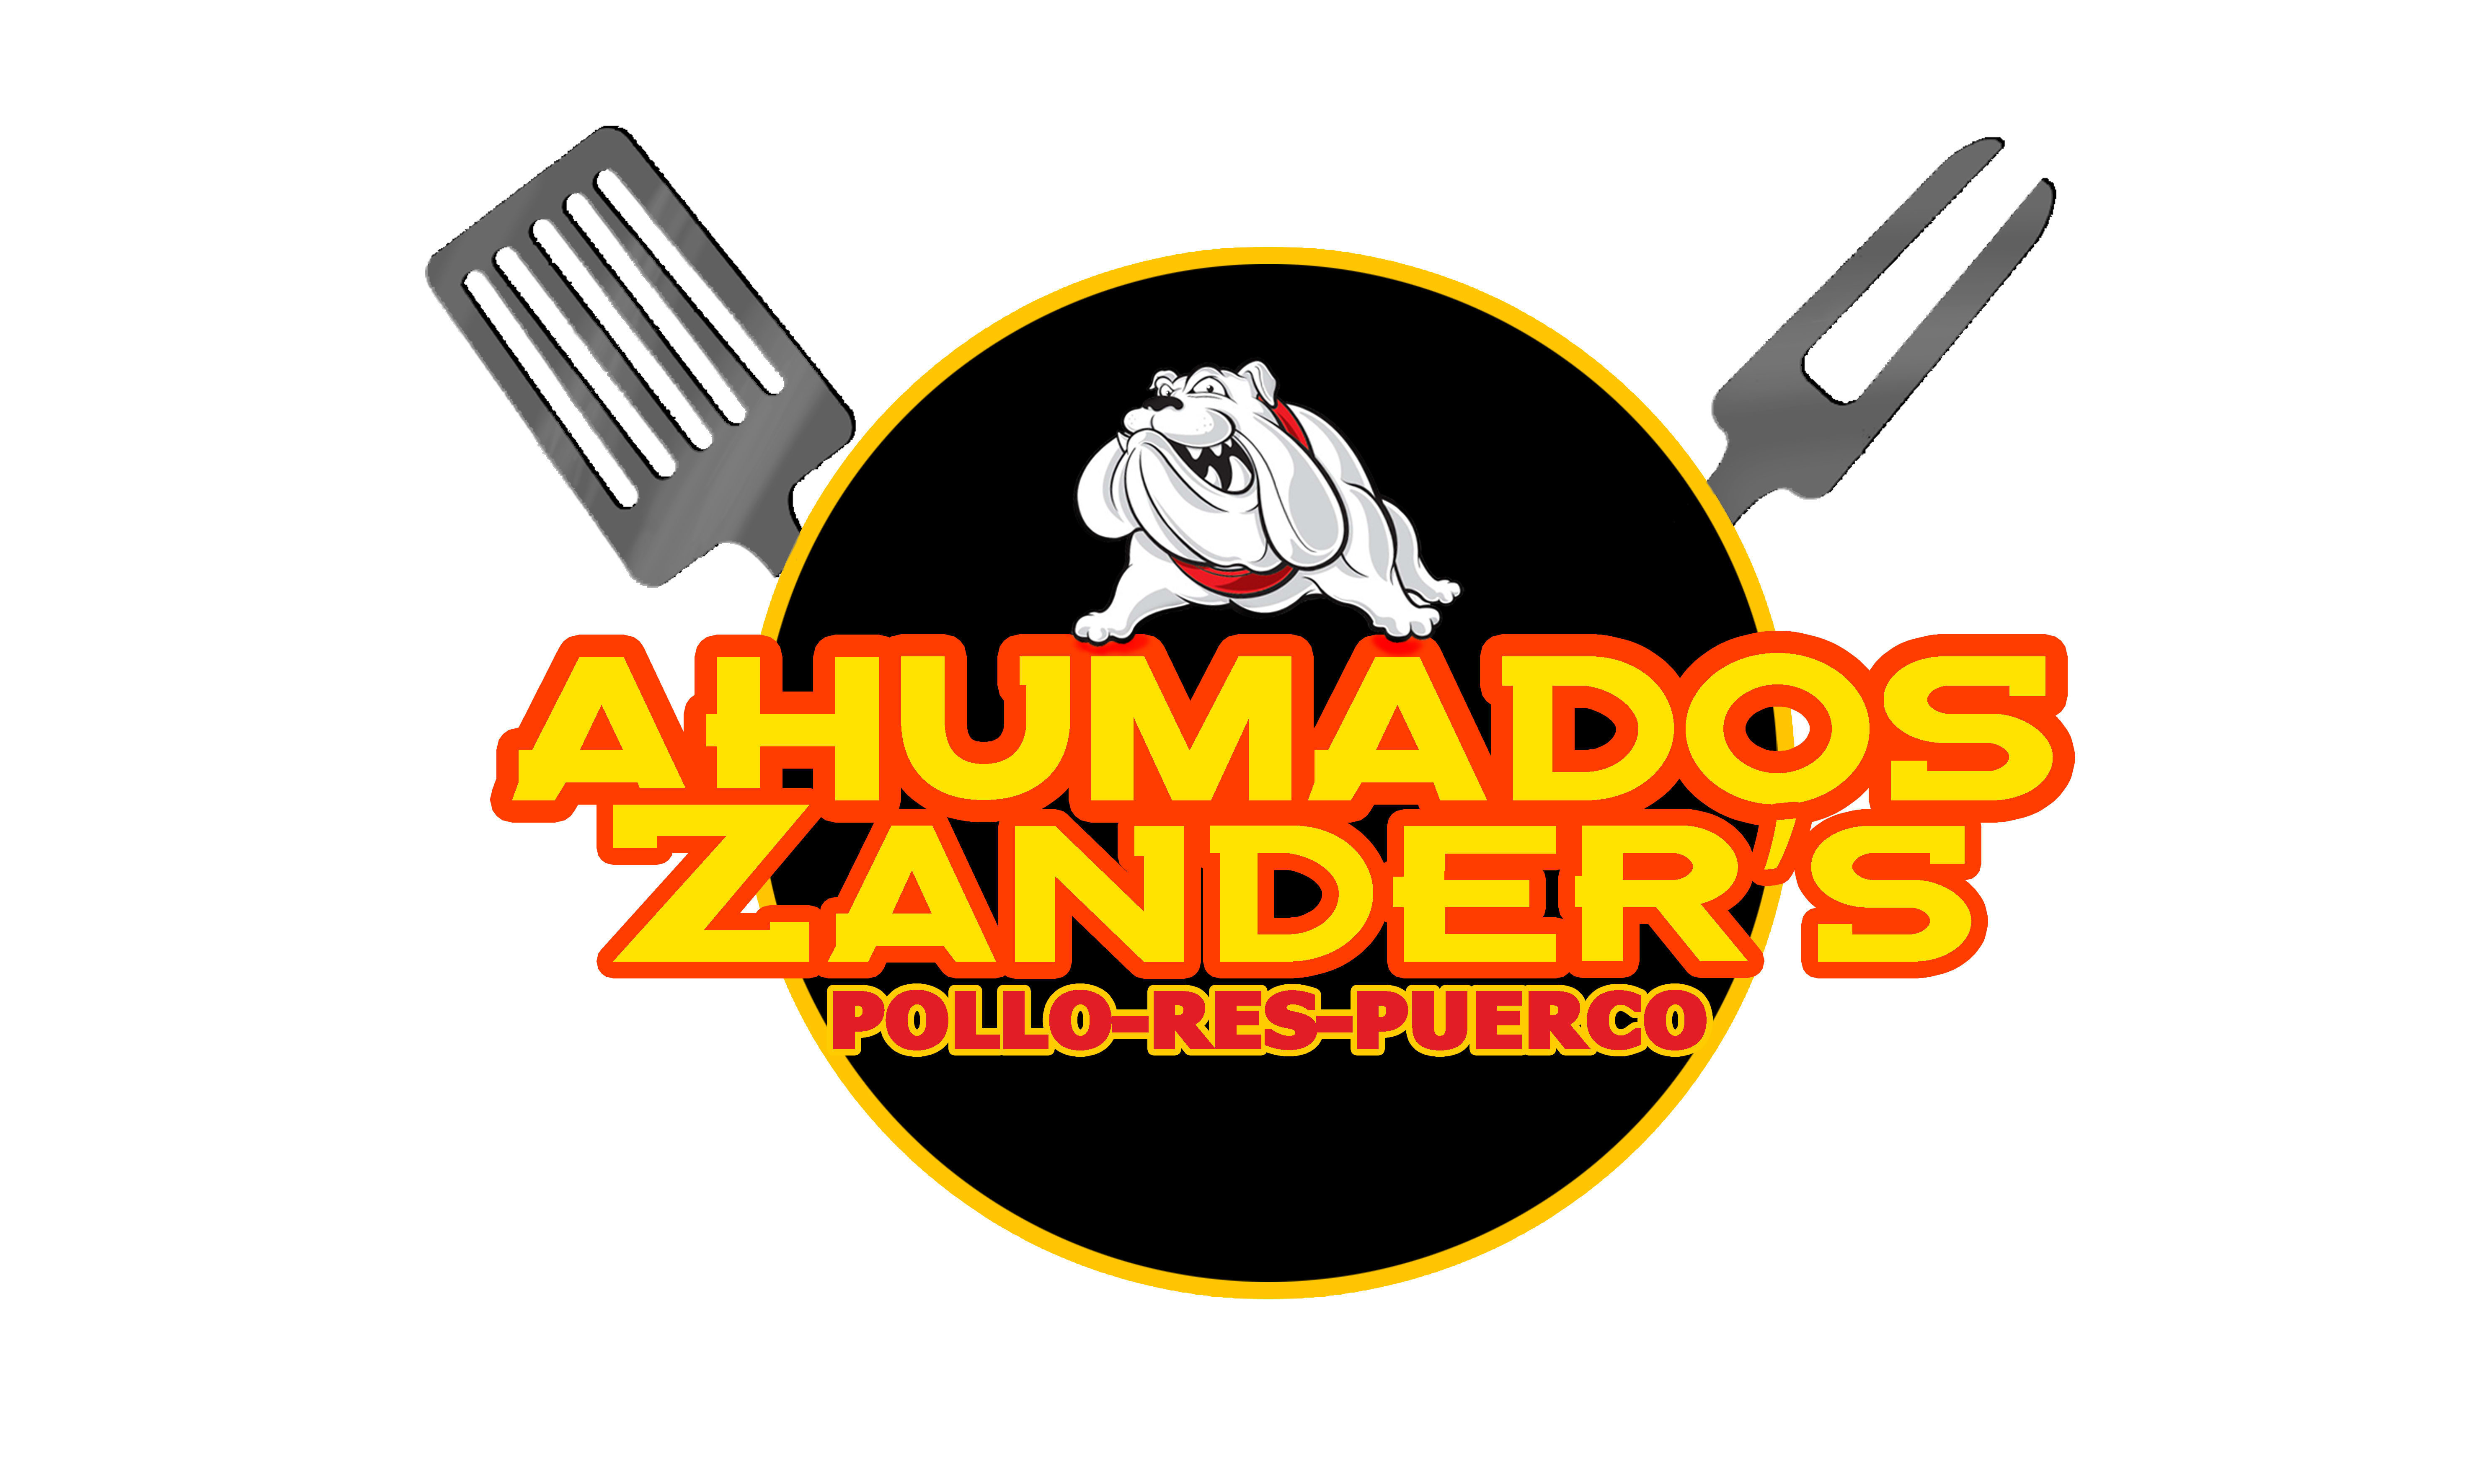 Ahumados Zander's